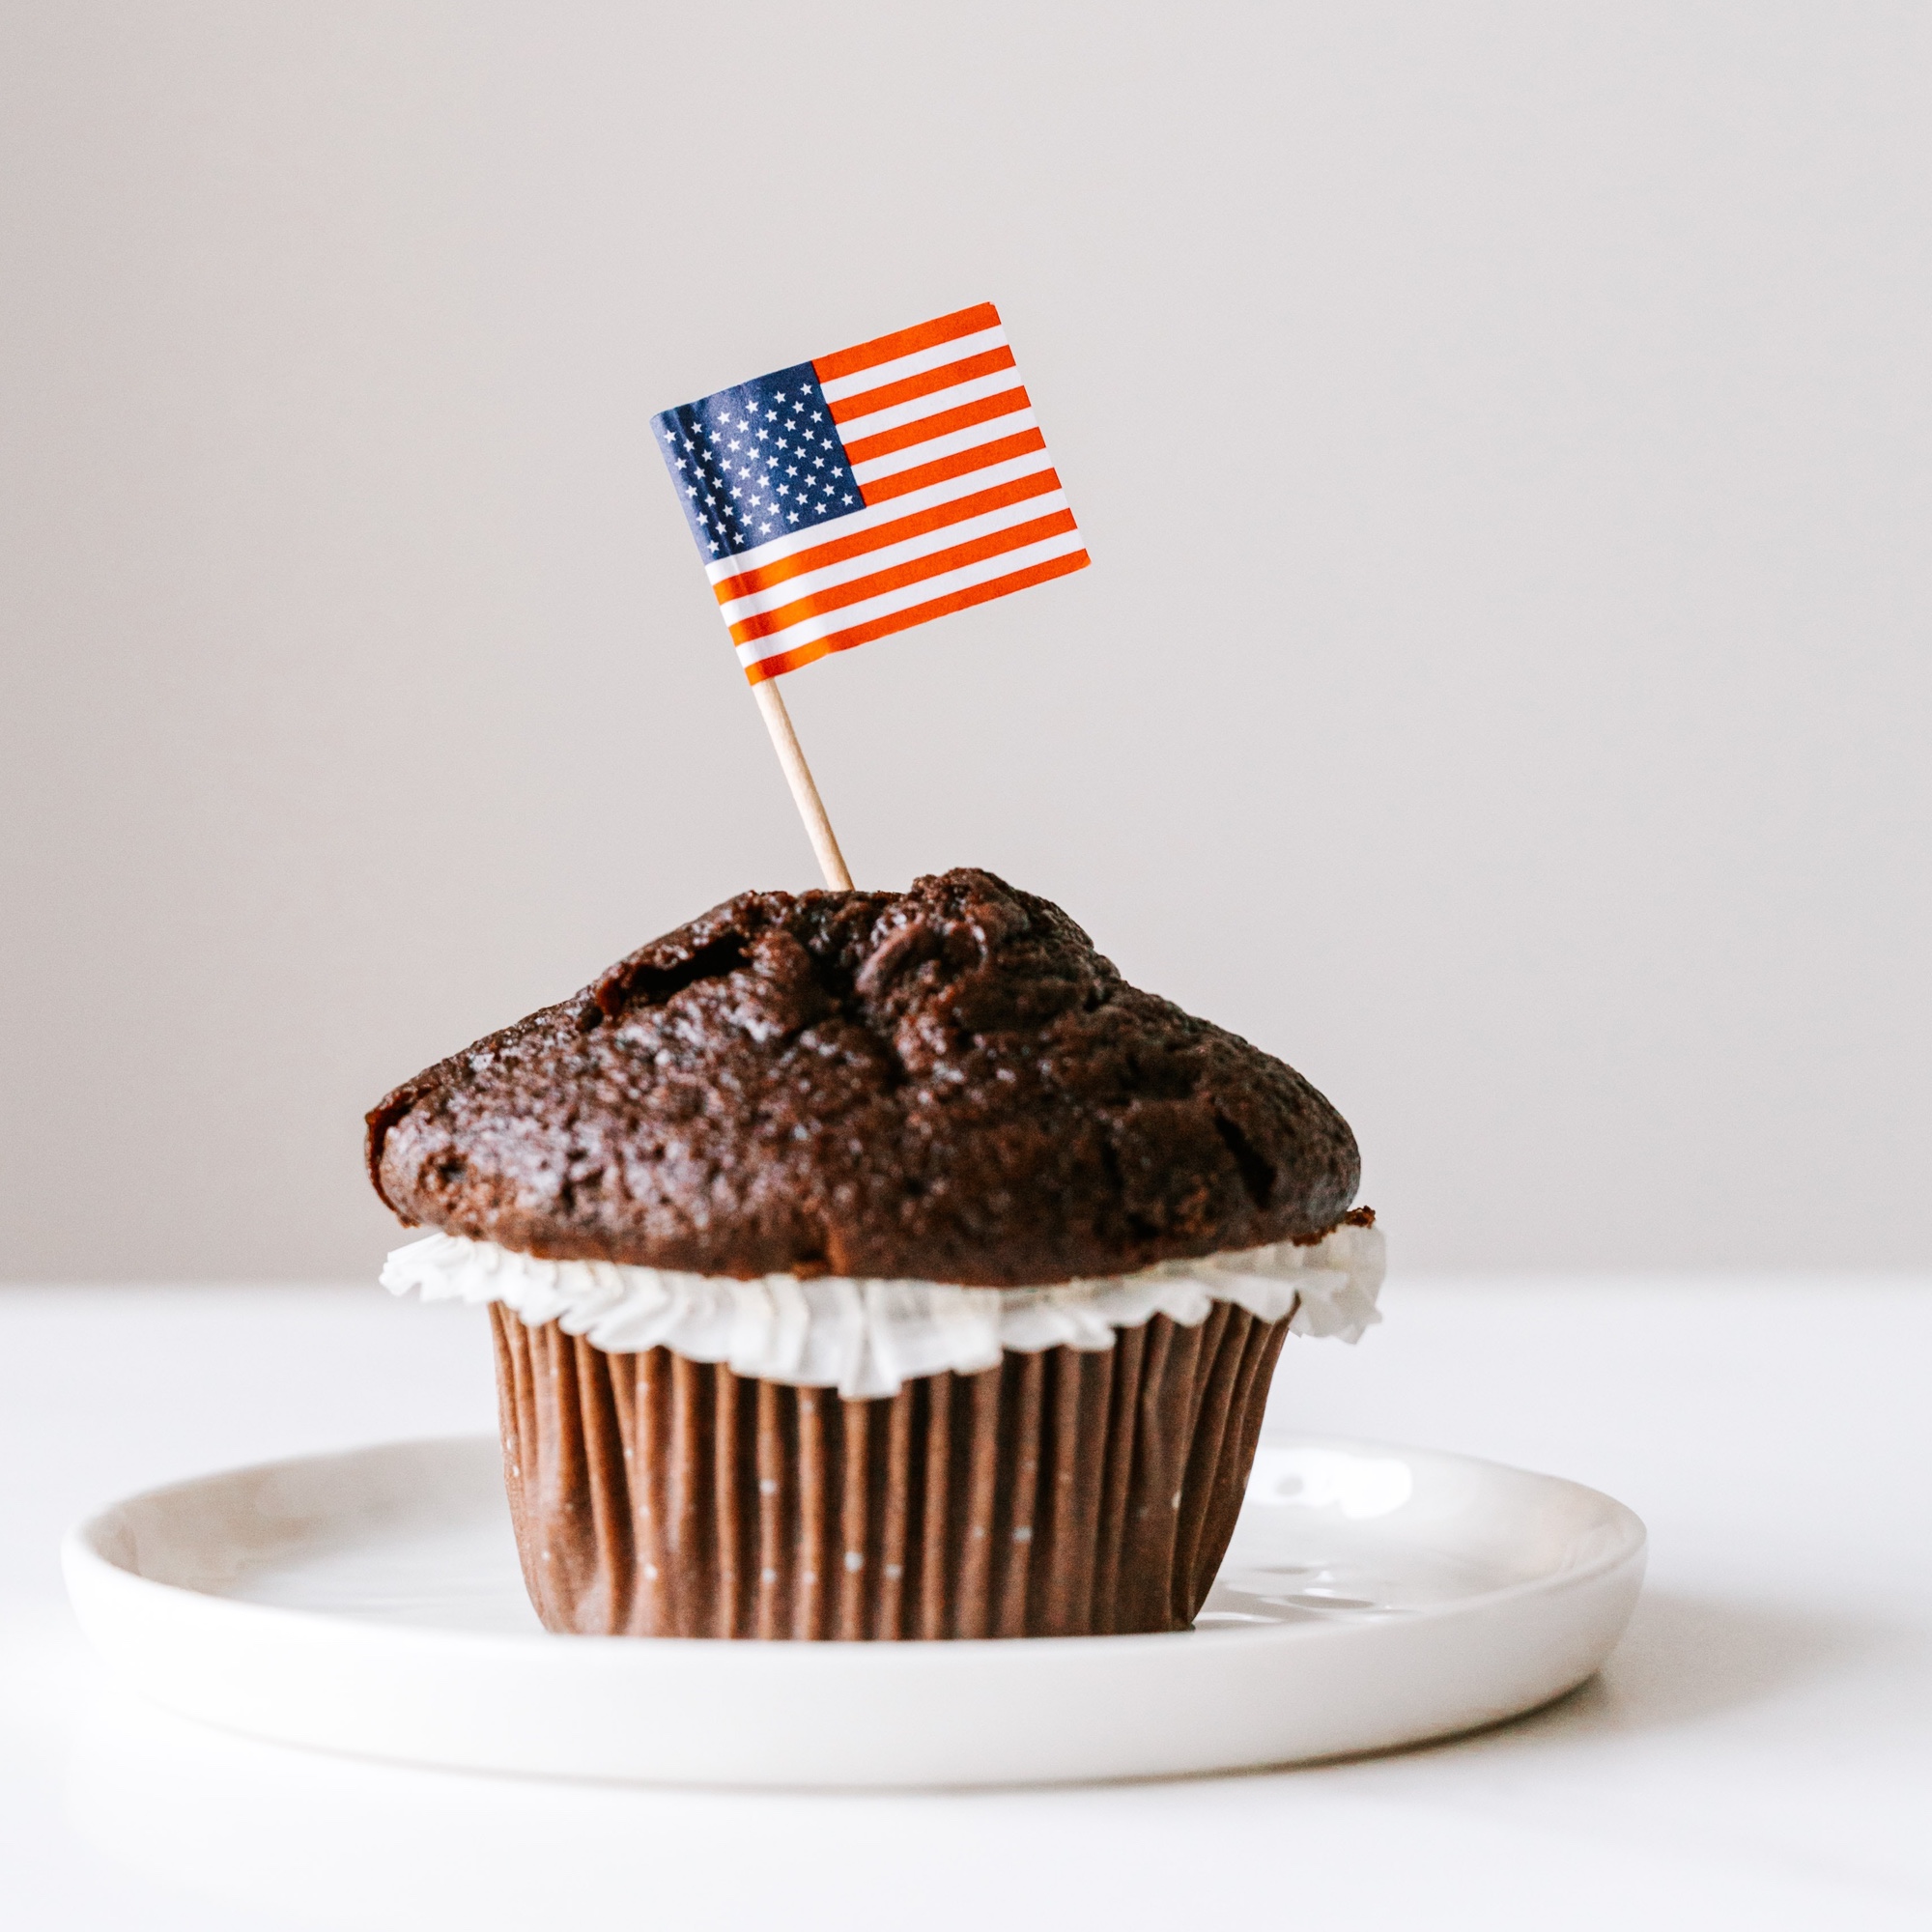 Foto: Cupcake mit amerikanischer Flagge